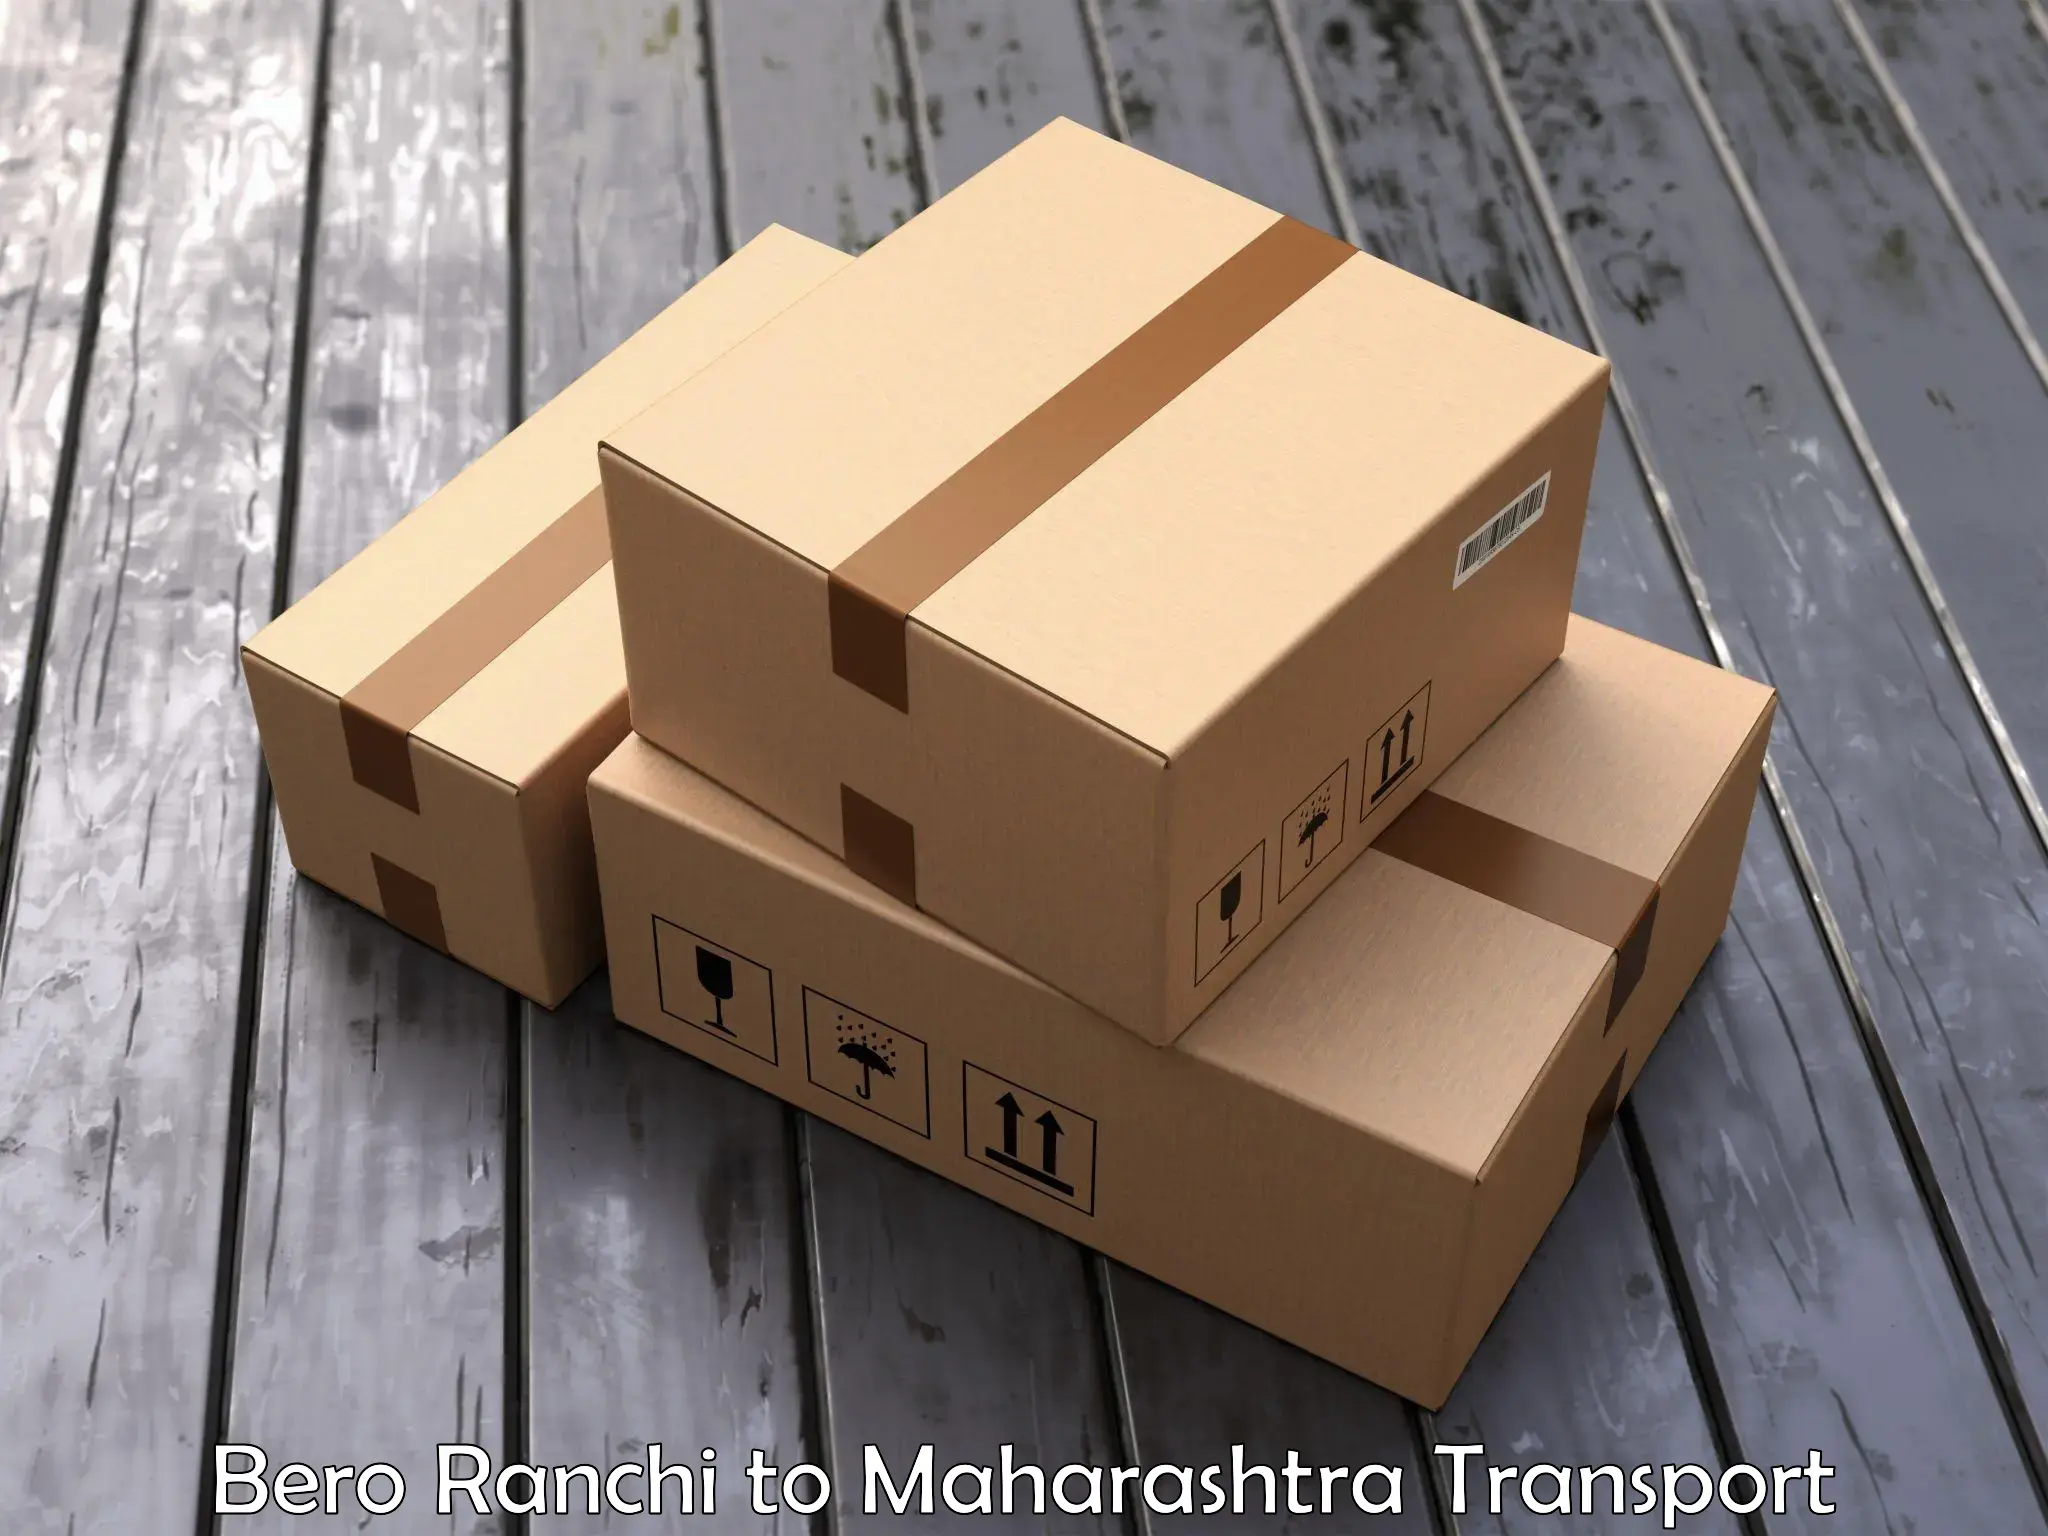 Furniture transport service Bero Ranchi to Panchwad